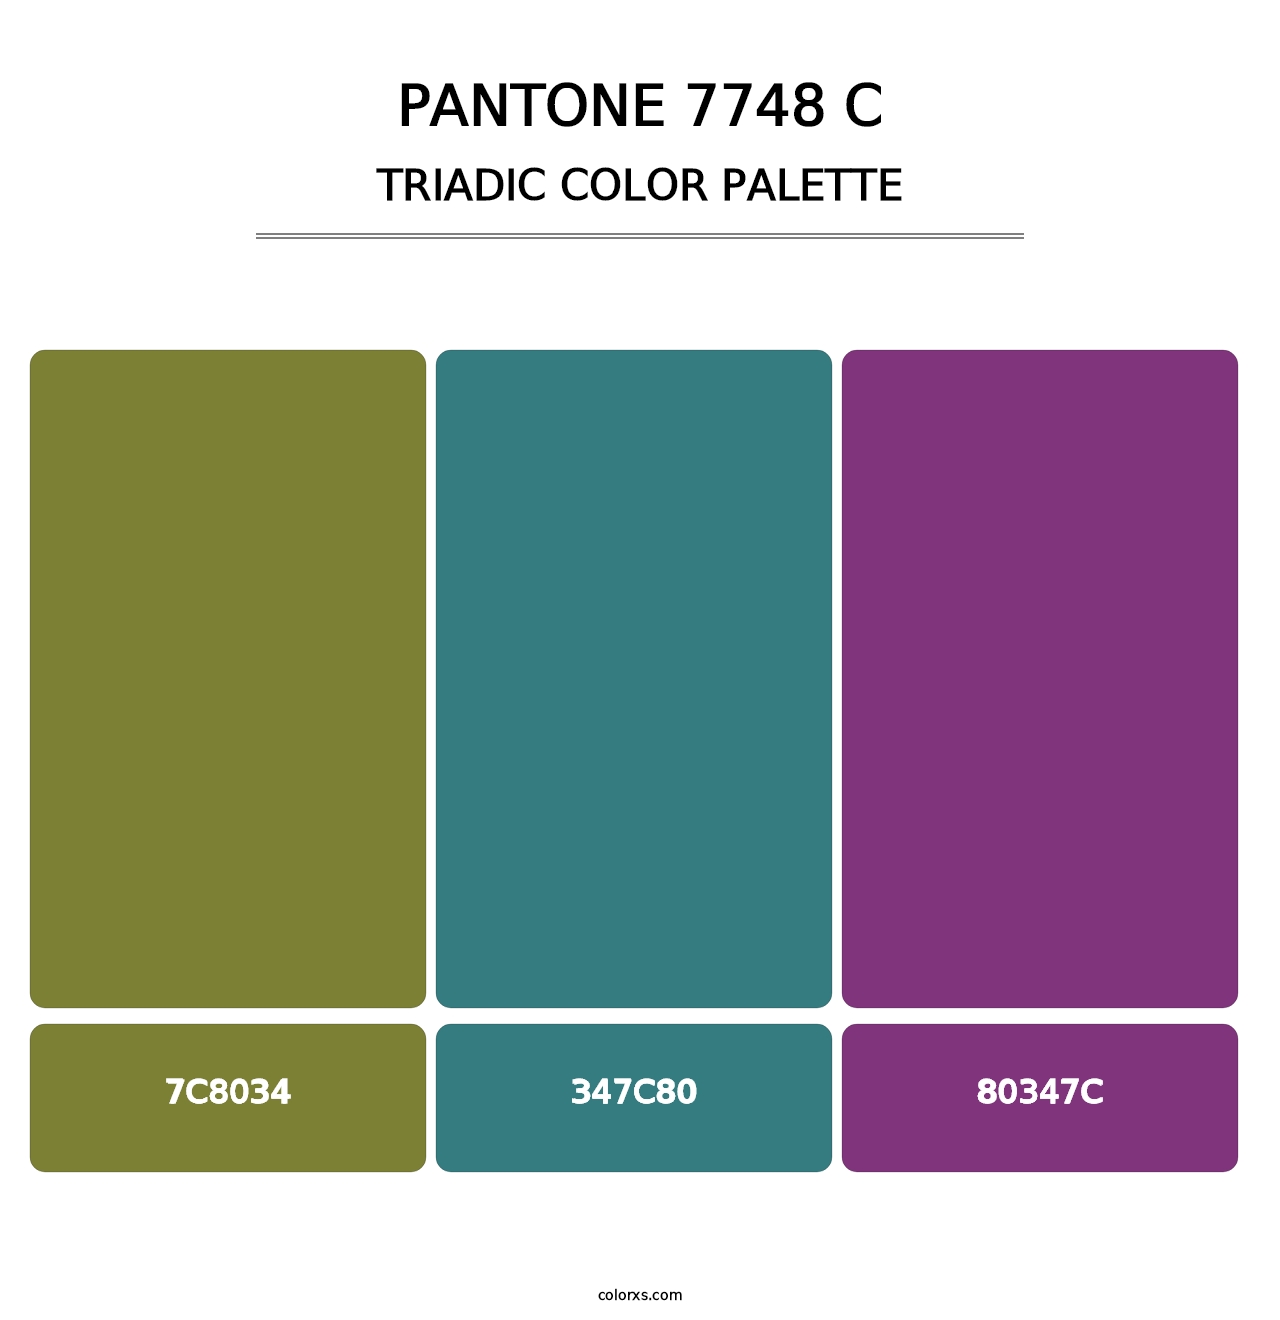 PANTONE 7748 C - Triadic Color Palette